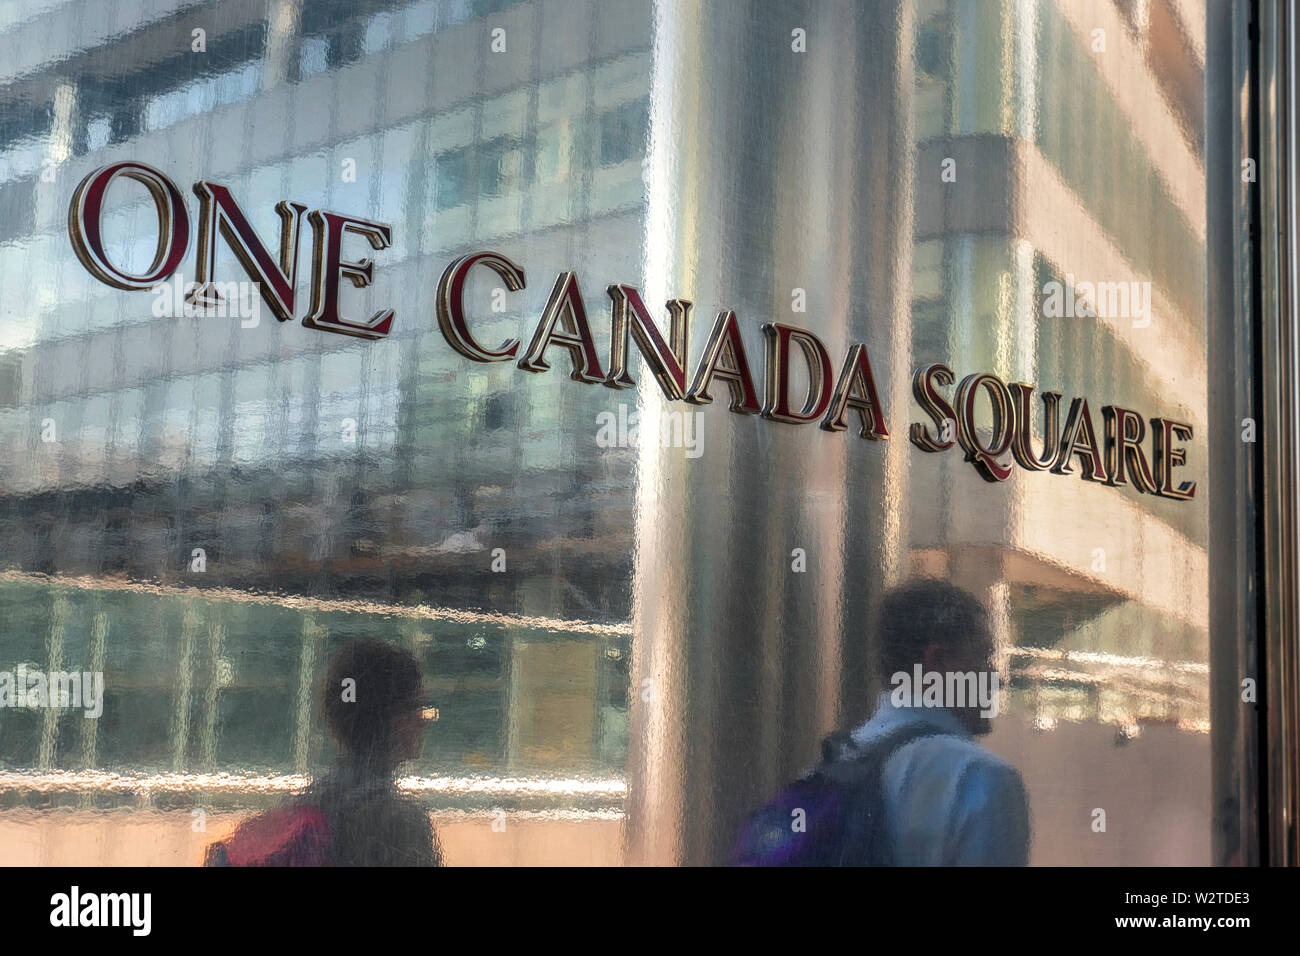 One Canada Square entrata lapide con pochi lavoratori della città si riflette nella brillantezza della superficie metallica al di fuori la mitica Torre One Canada Square a Canary Wharf London E14 Foto Stock